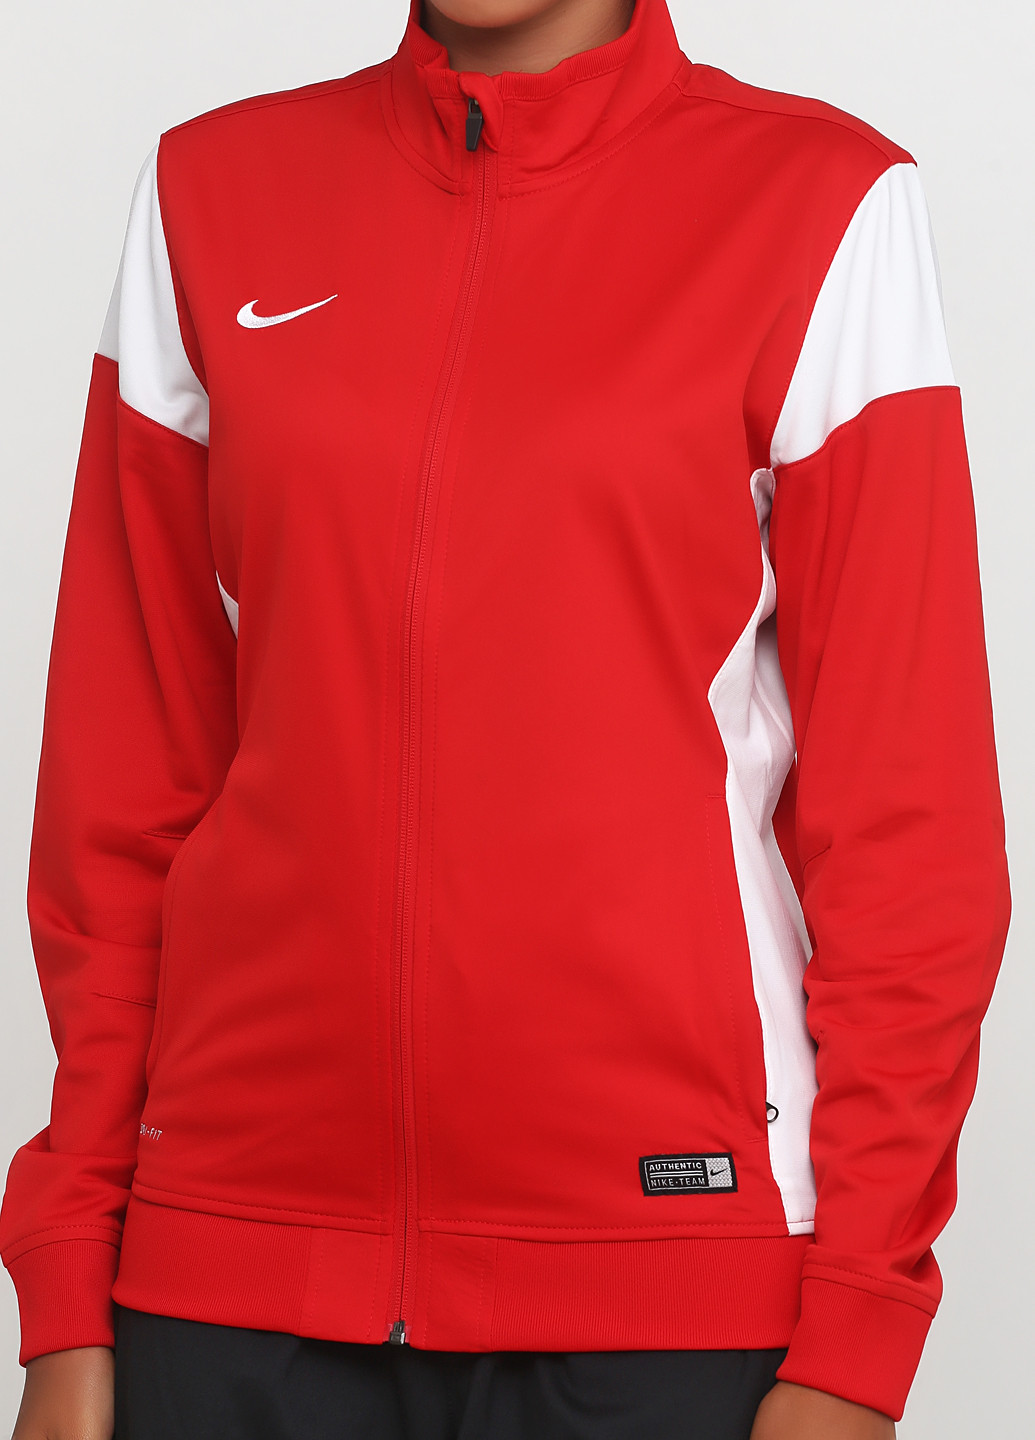 Кофта Nike Women's Sideline Knit Jacket 616605-657